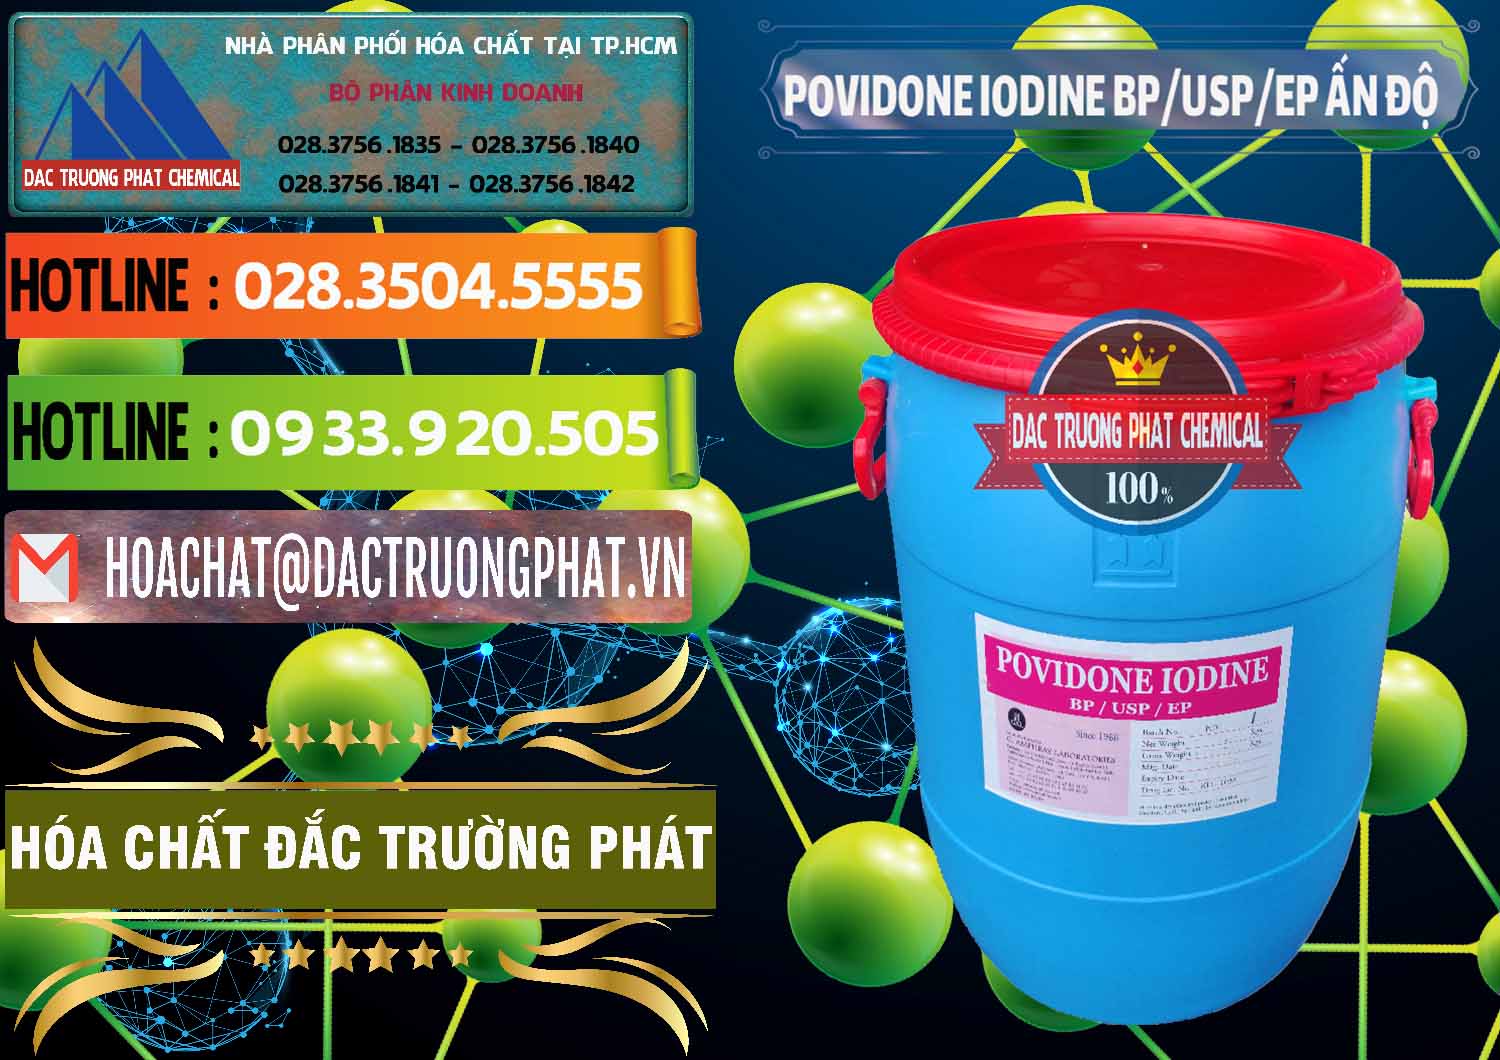 Nơi chuyên cung cấp - bán Povidone Iodine BP USP EP Ấn Độ India - 0318 - Công ty bán - cung cấp hóa chất tại TP.HCM - cungcaphoachat.com.vn